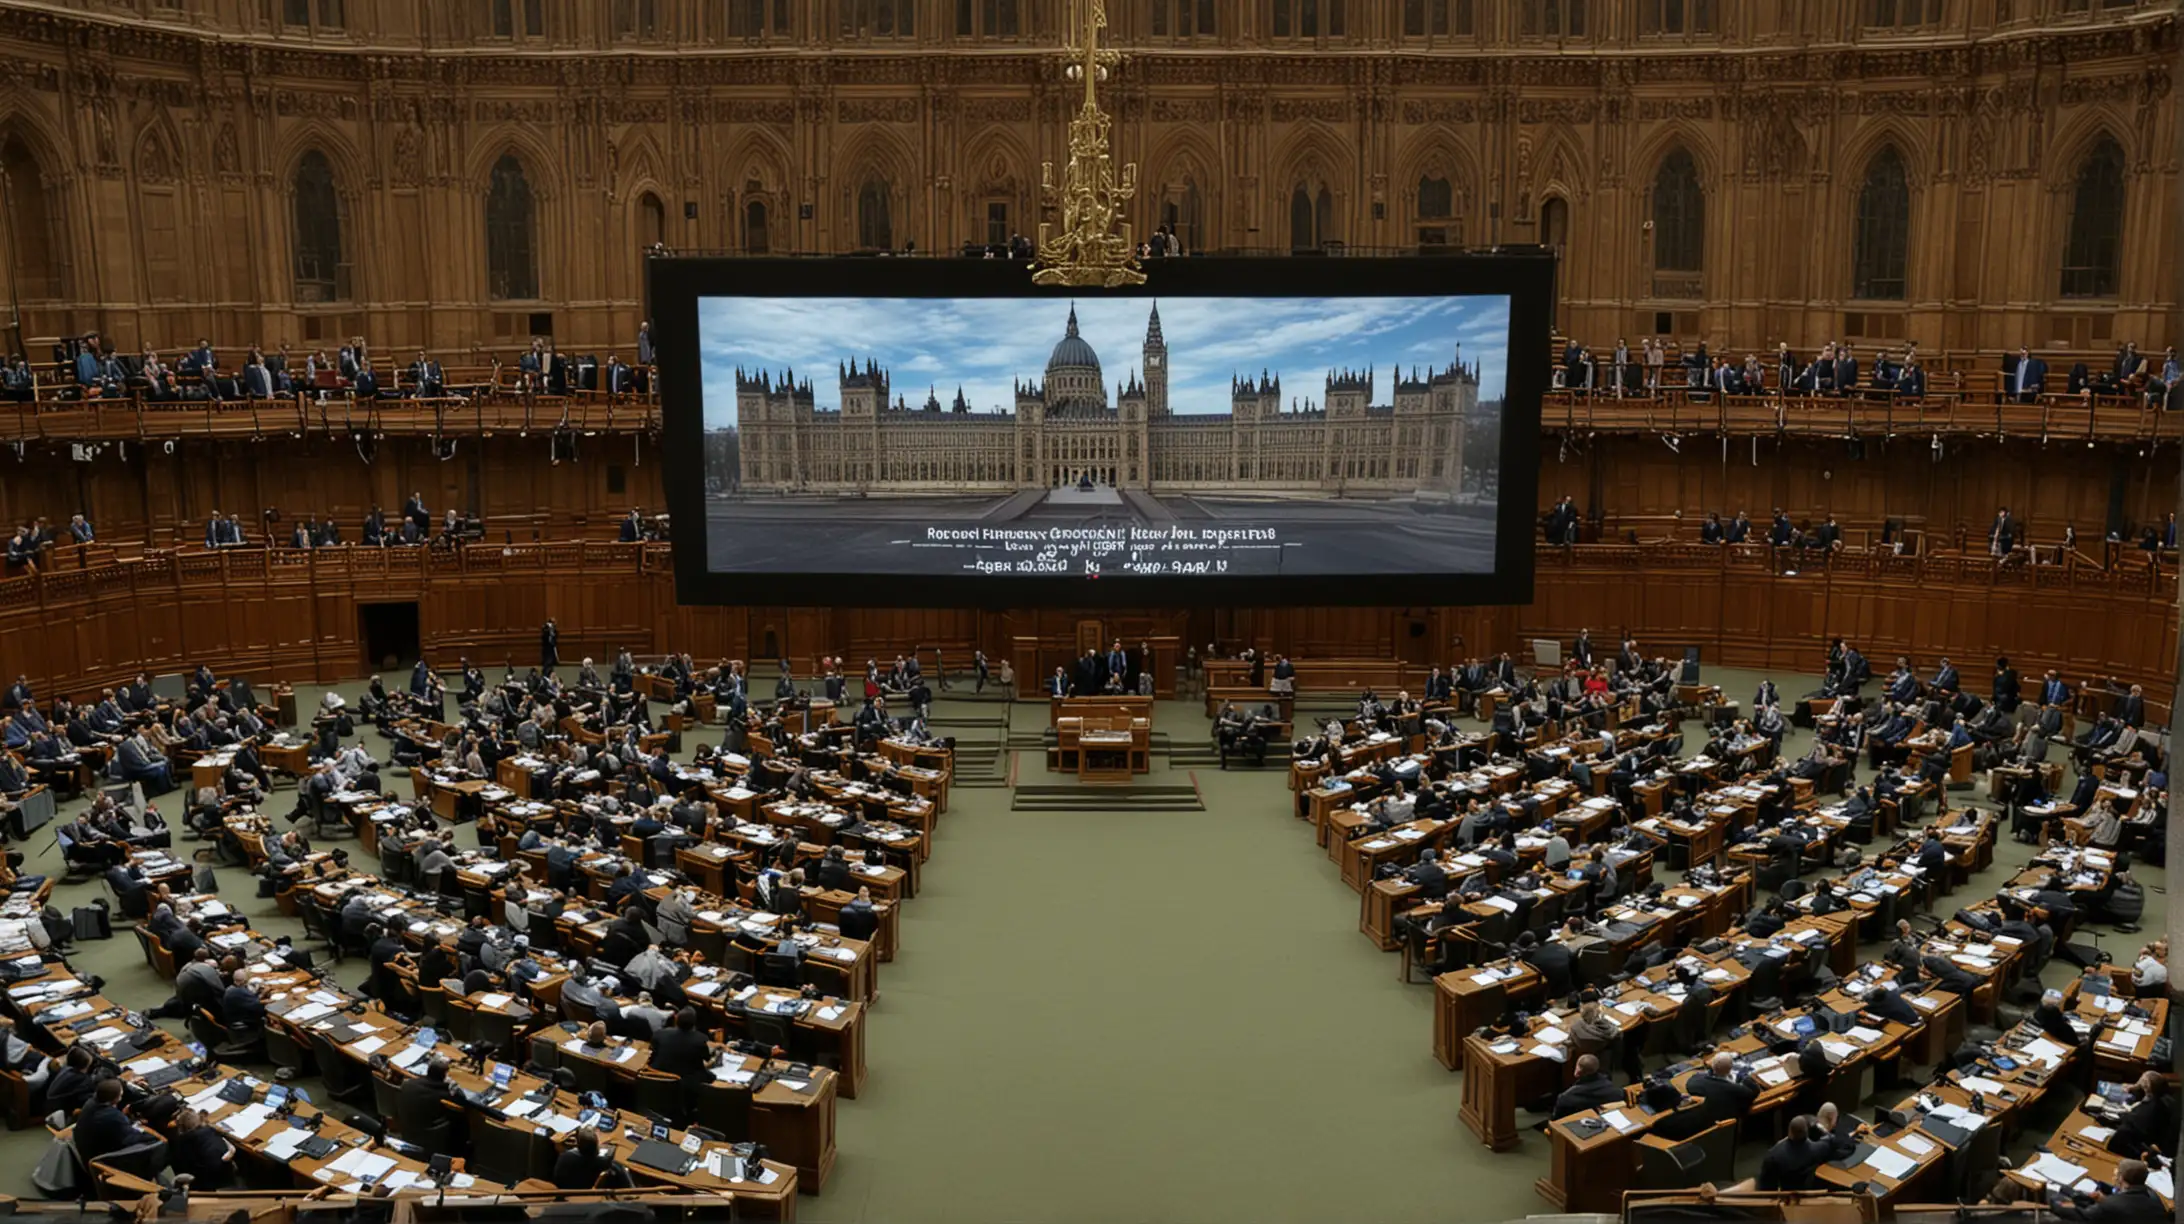 Präsentation auf einem Bildschirm in einem Parlamentssaal